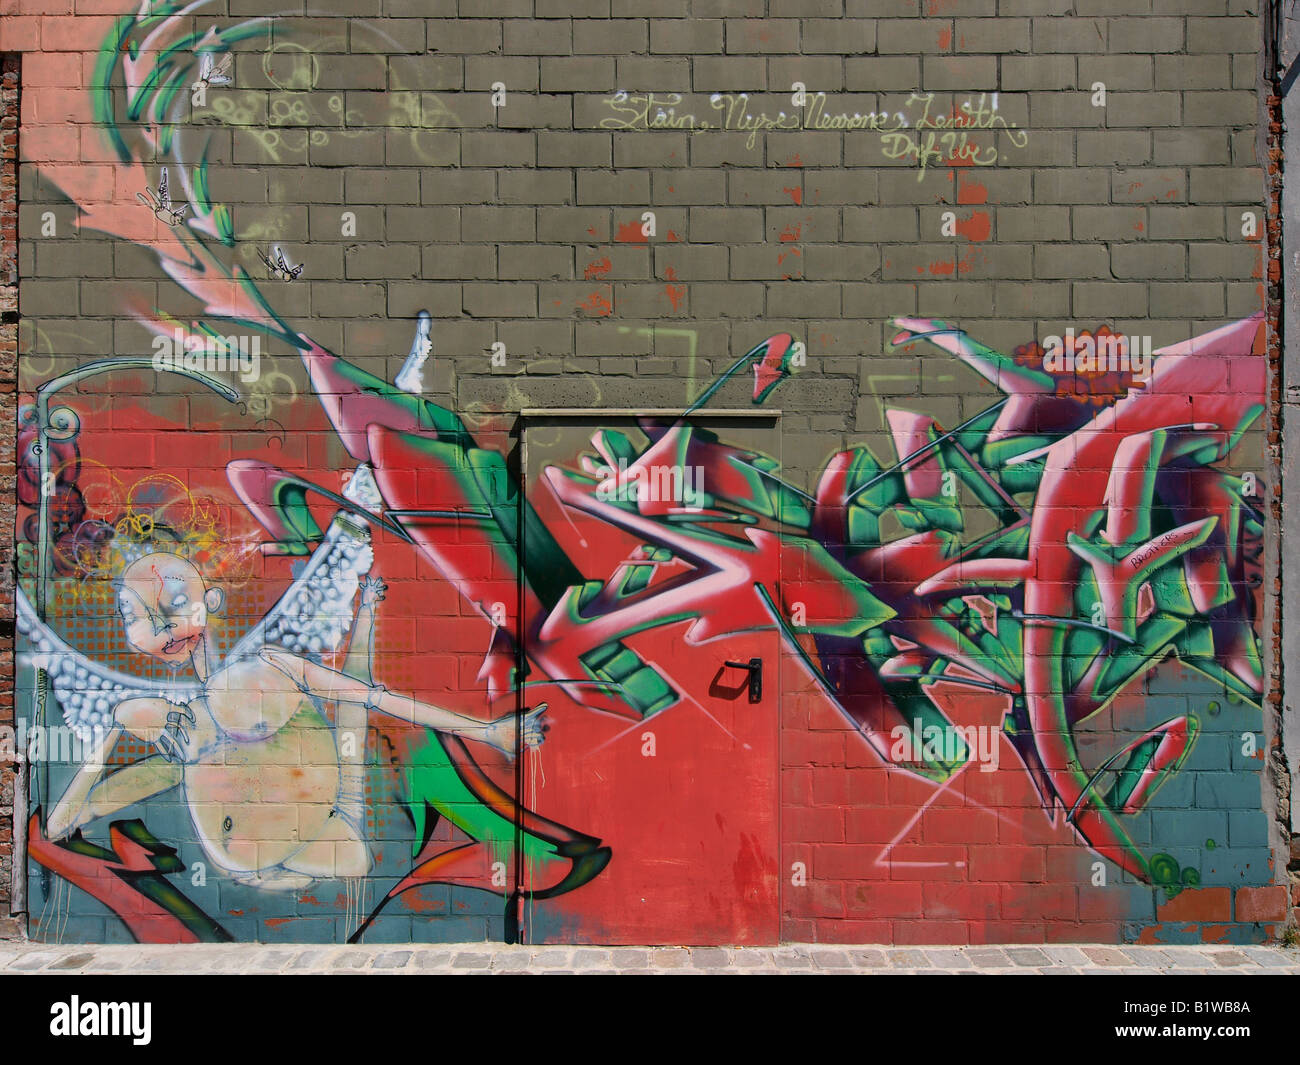 Interesting graffiti art on wall with door Antwerp Flanders Belgium Stock Photo